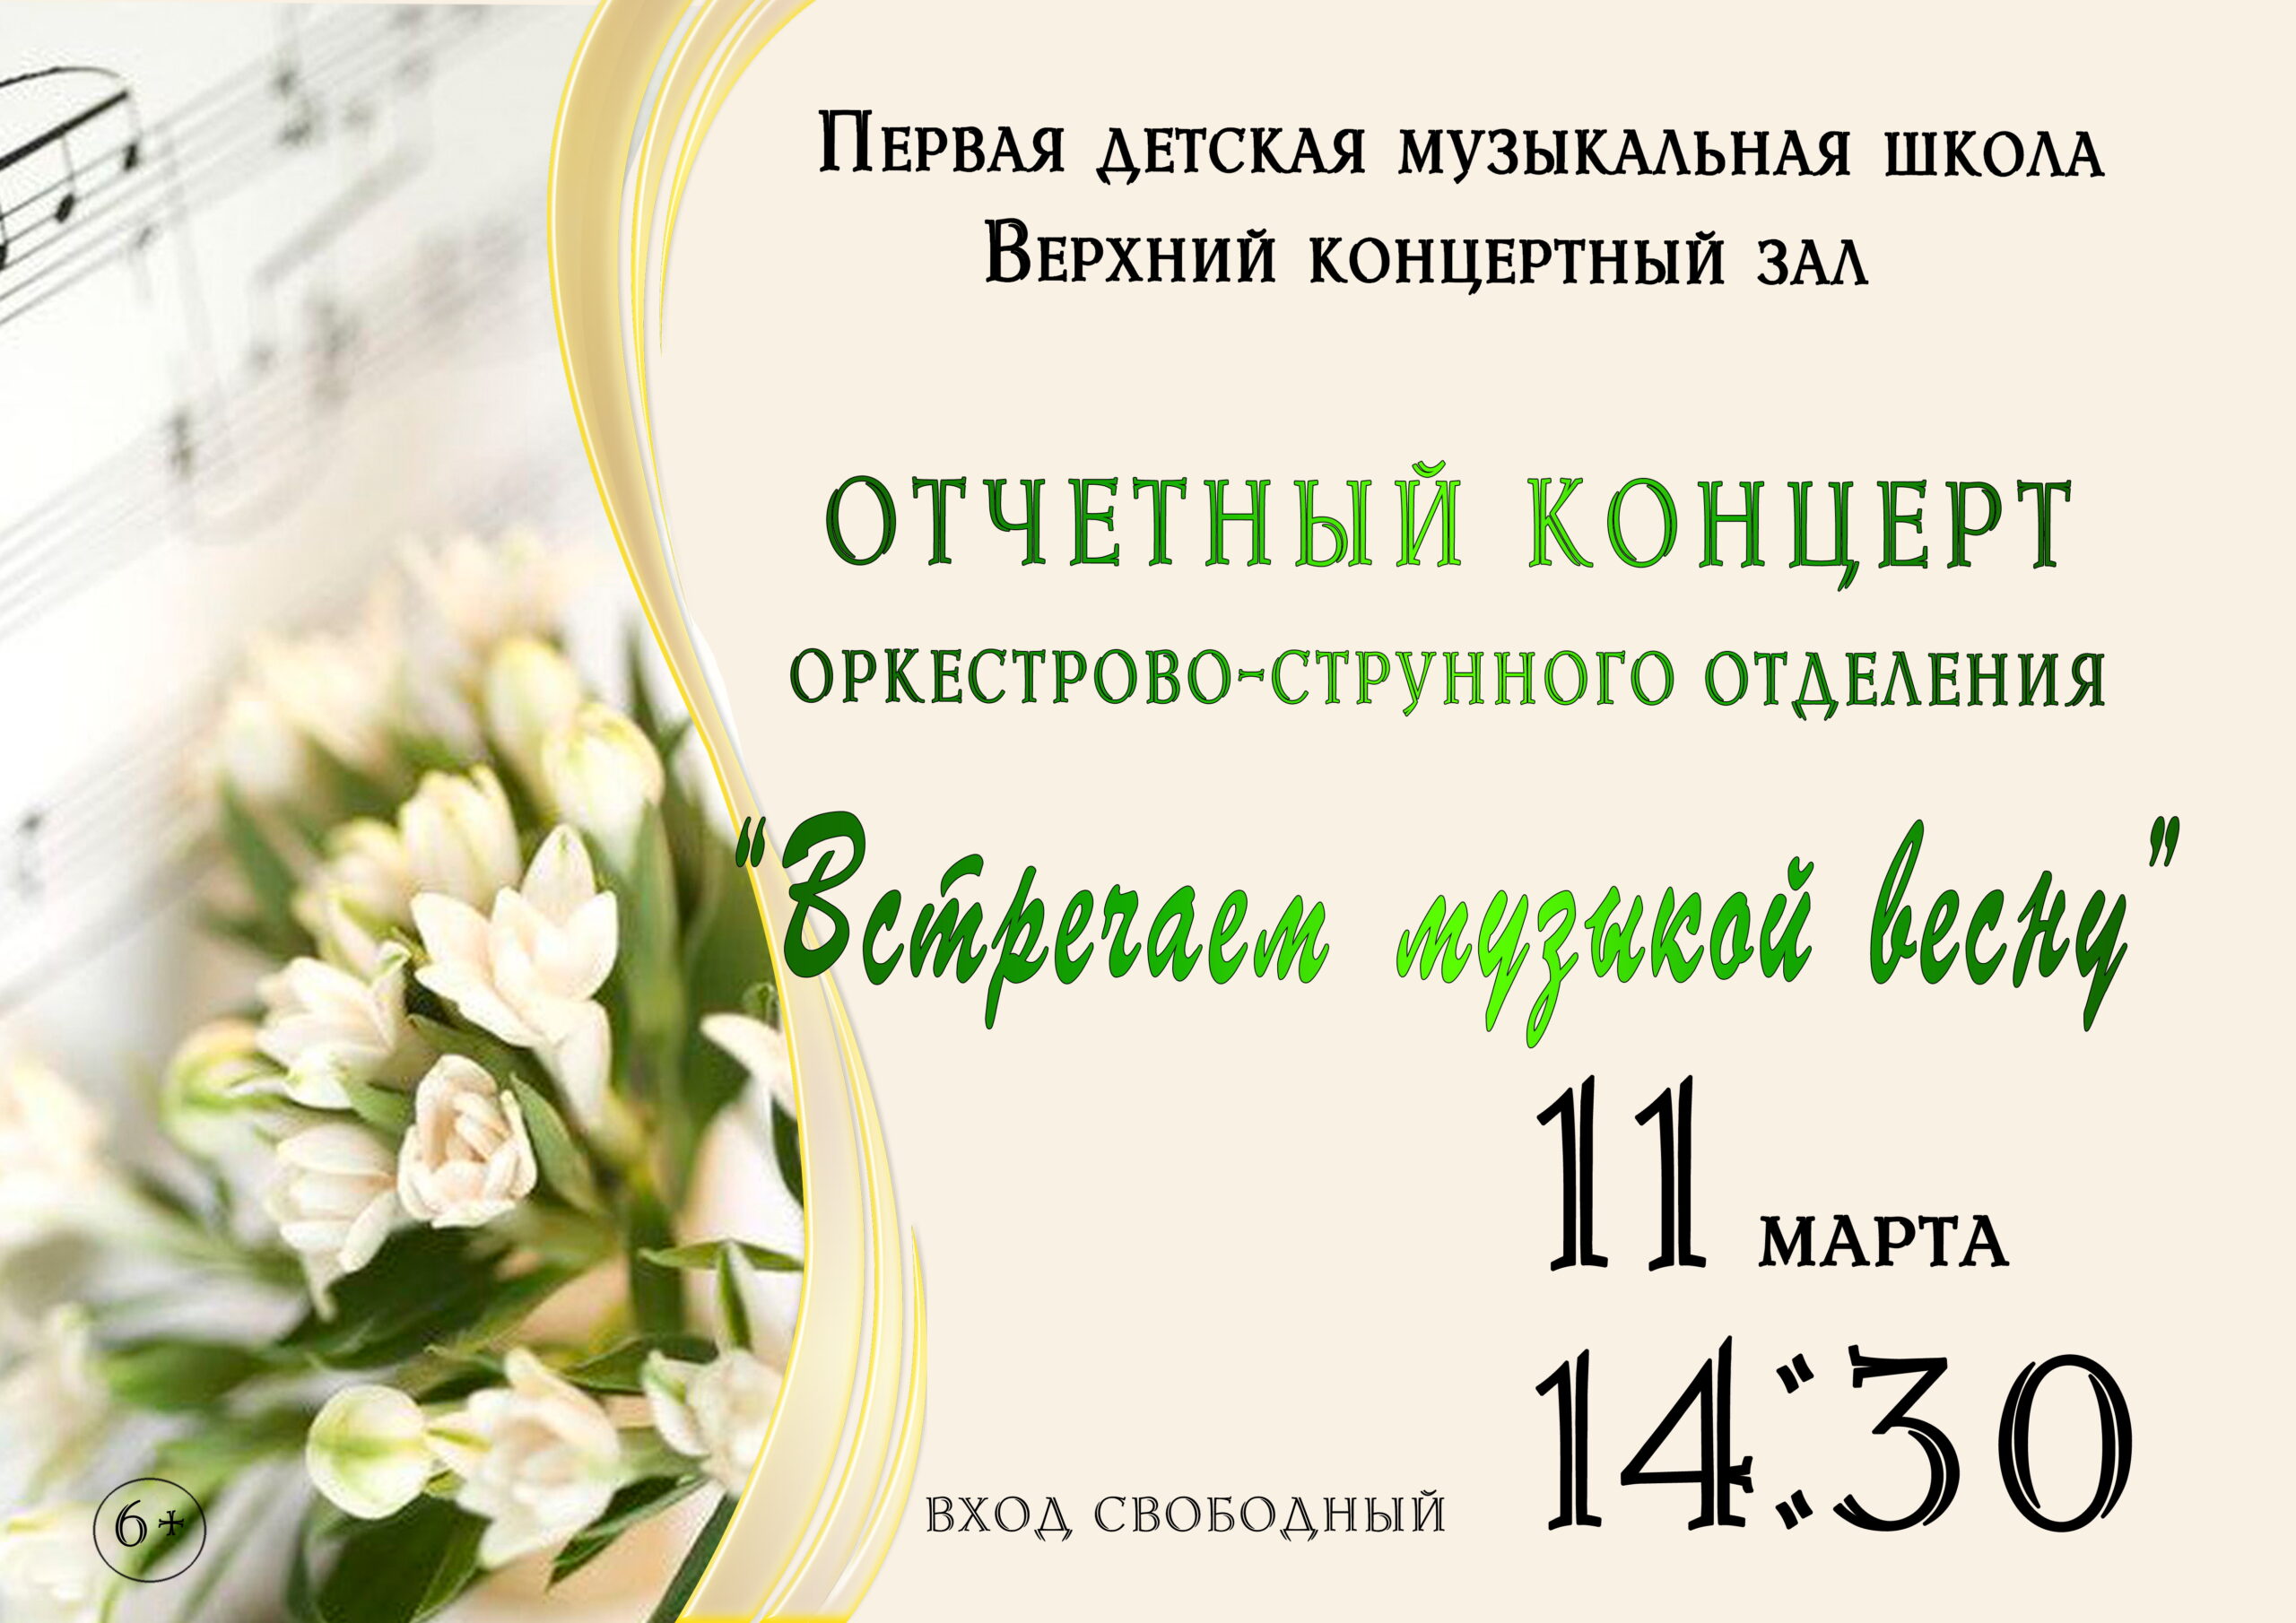 11 марта Отчетный концерт струнного отделения "Встречаем музыкой весну"